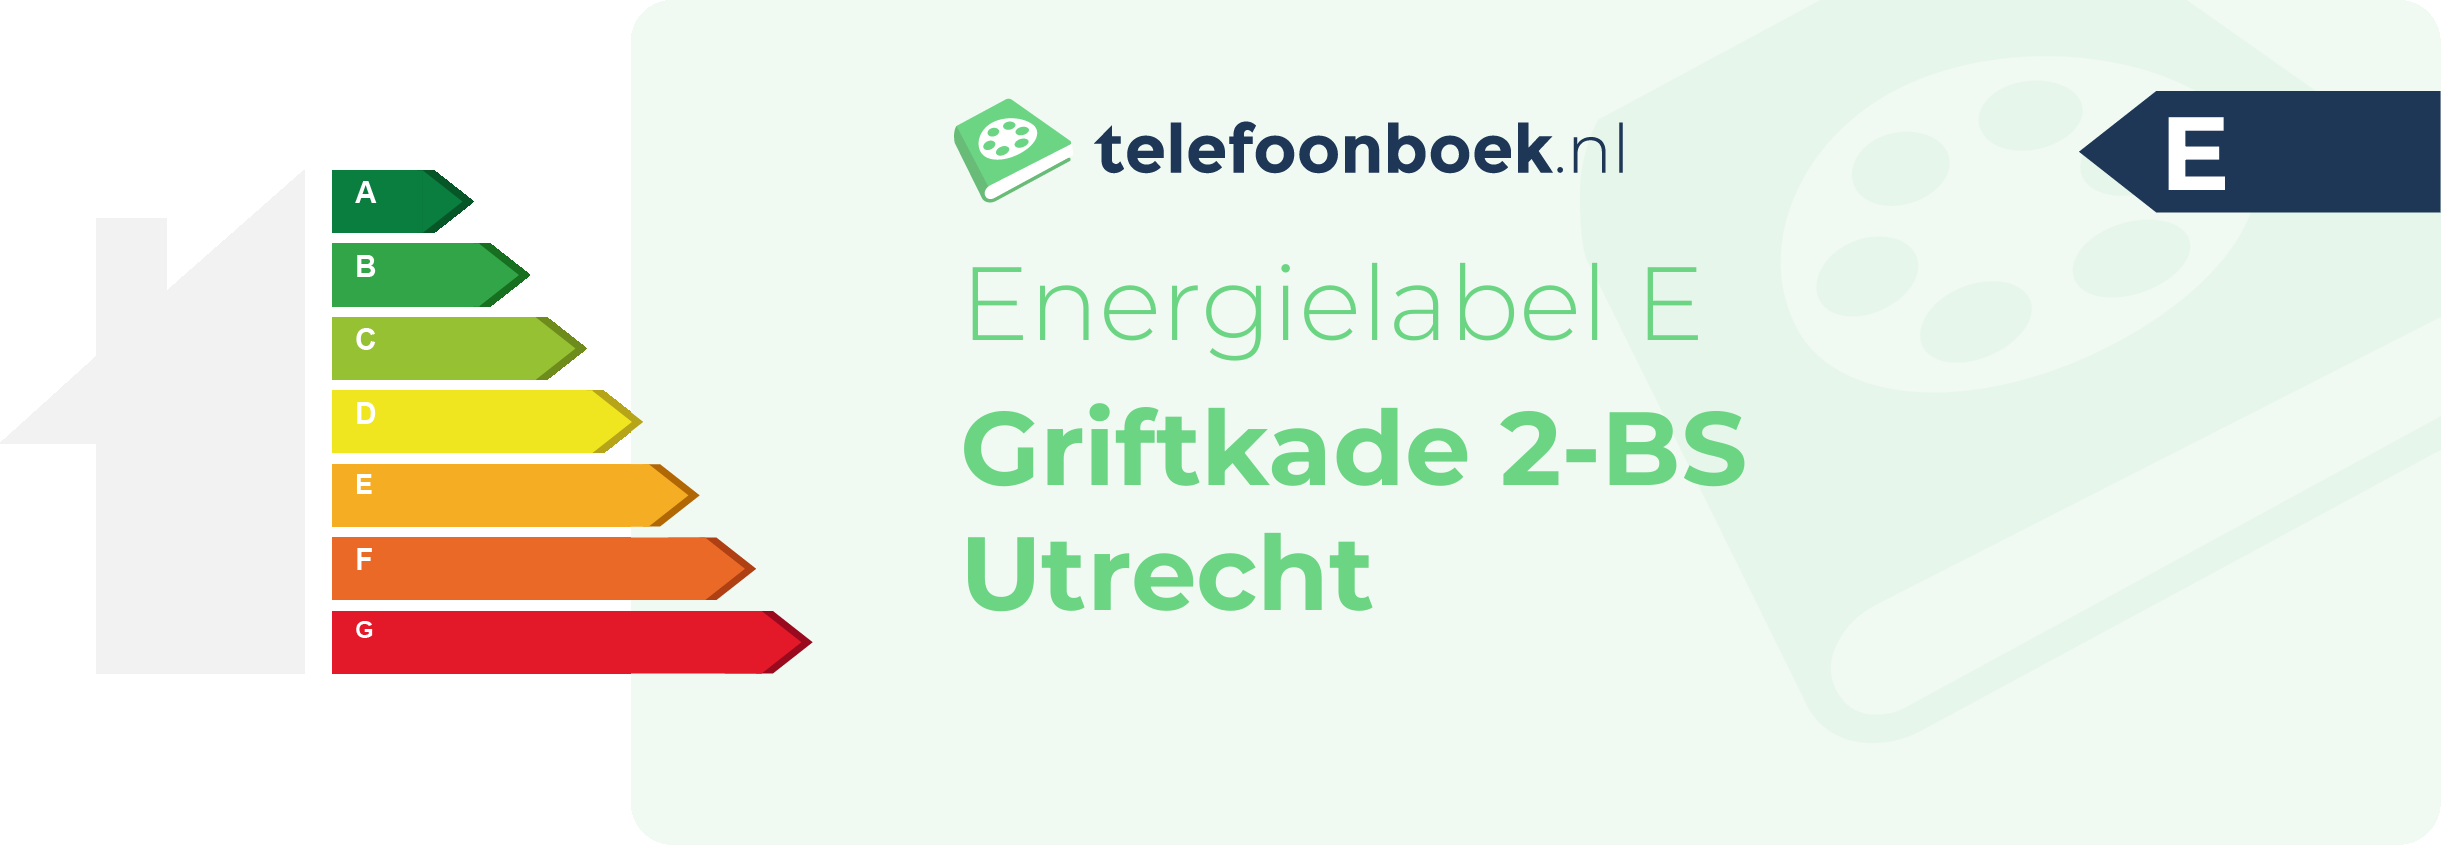 Energielabel Griftkade 2-BS Utrecht